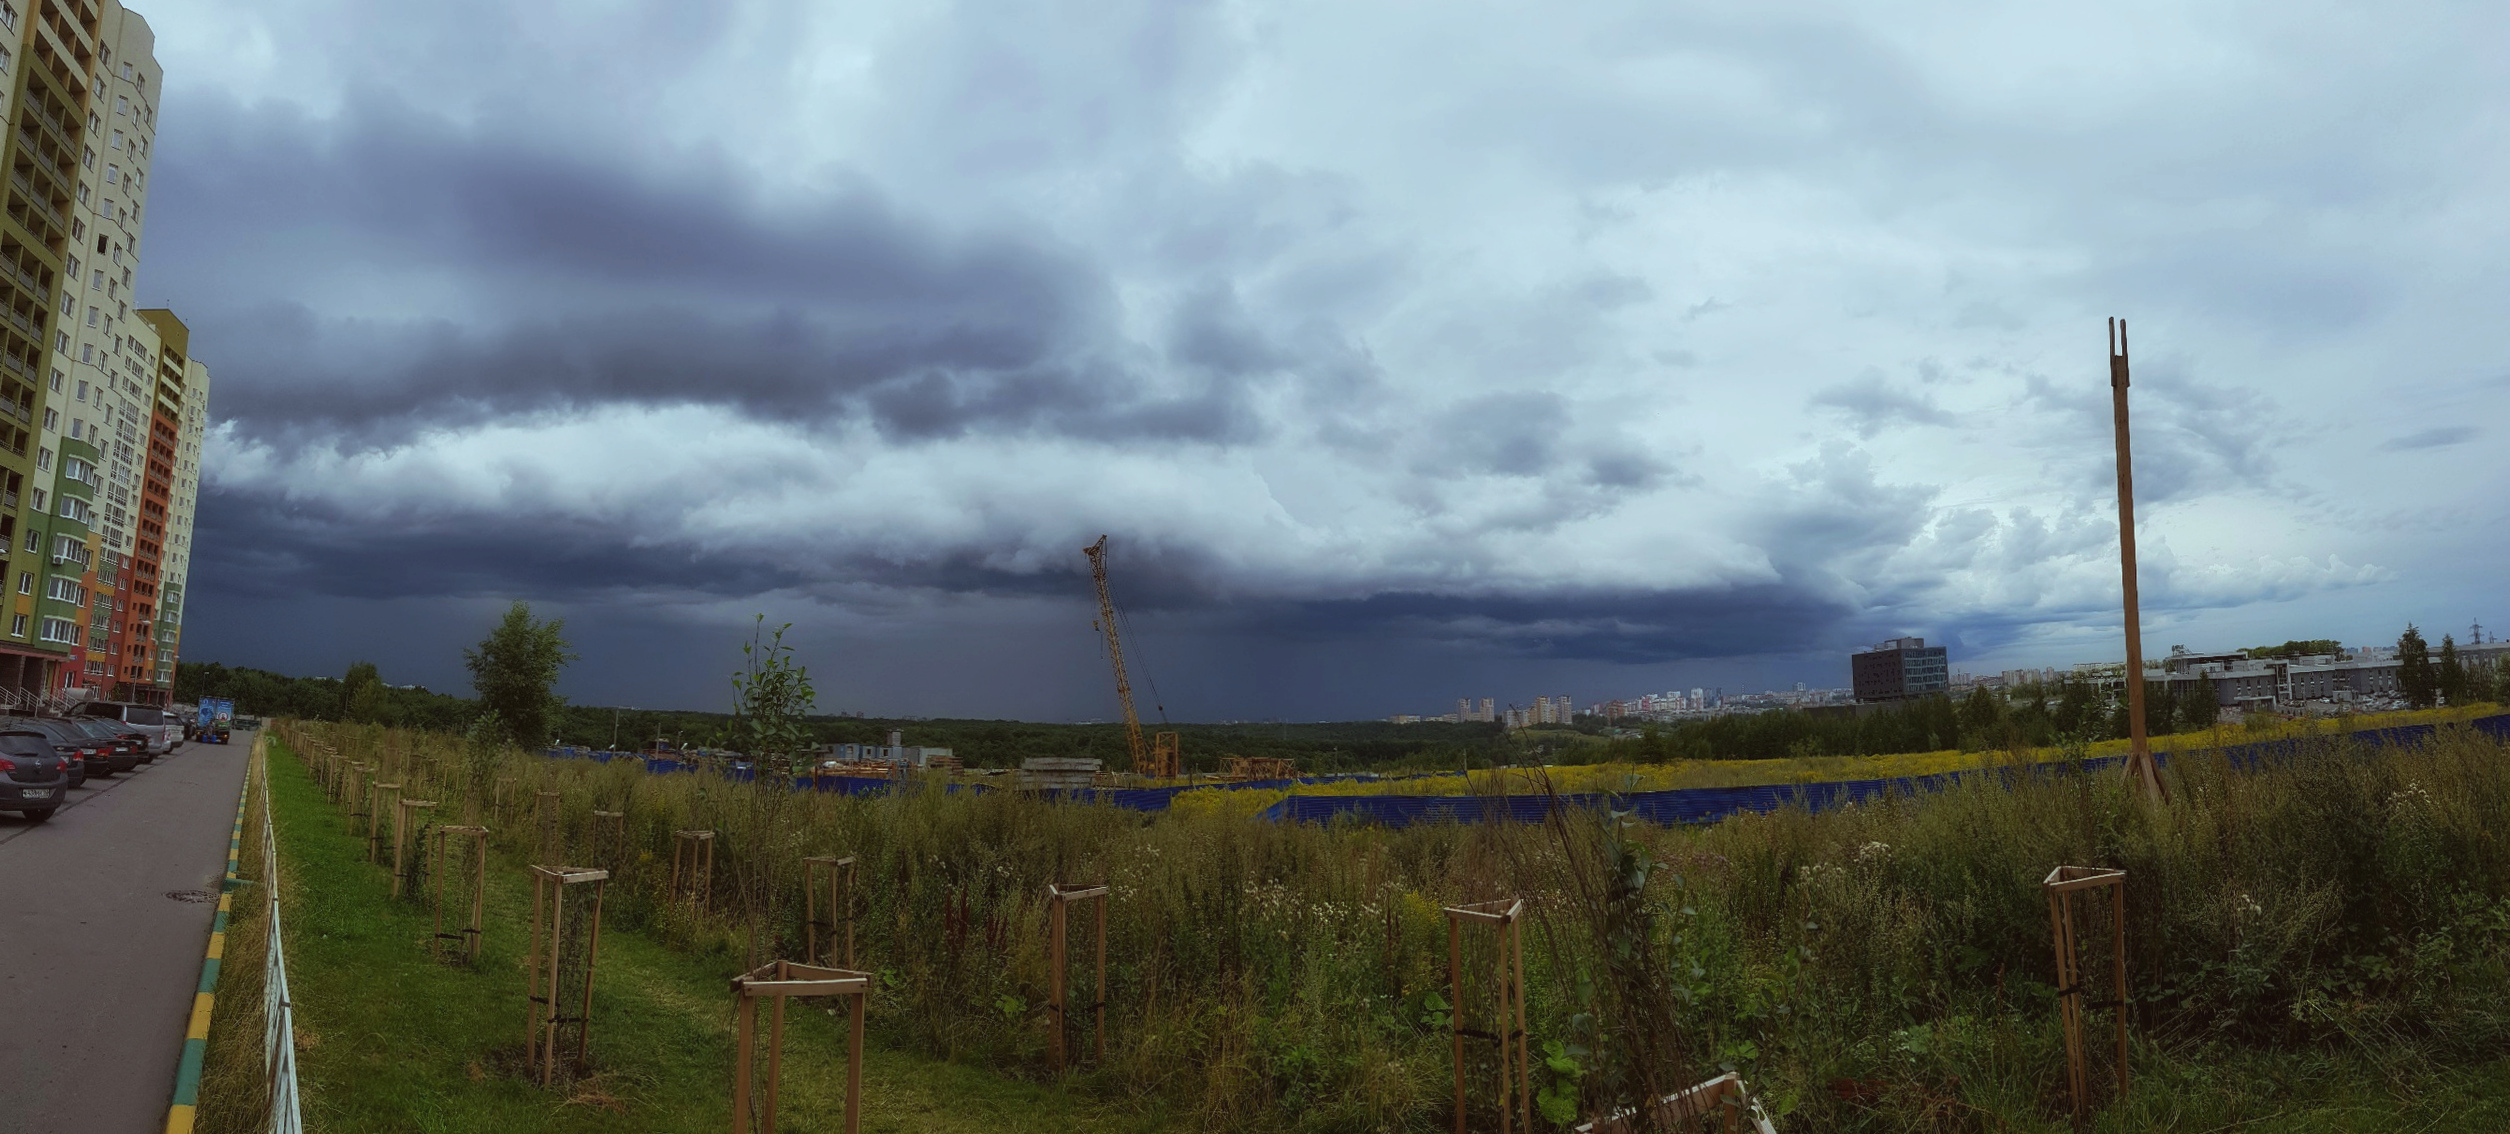 Пасмурно и зрелищно: нижегородцы поделились фотографиями неба перед дождем - фото 1